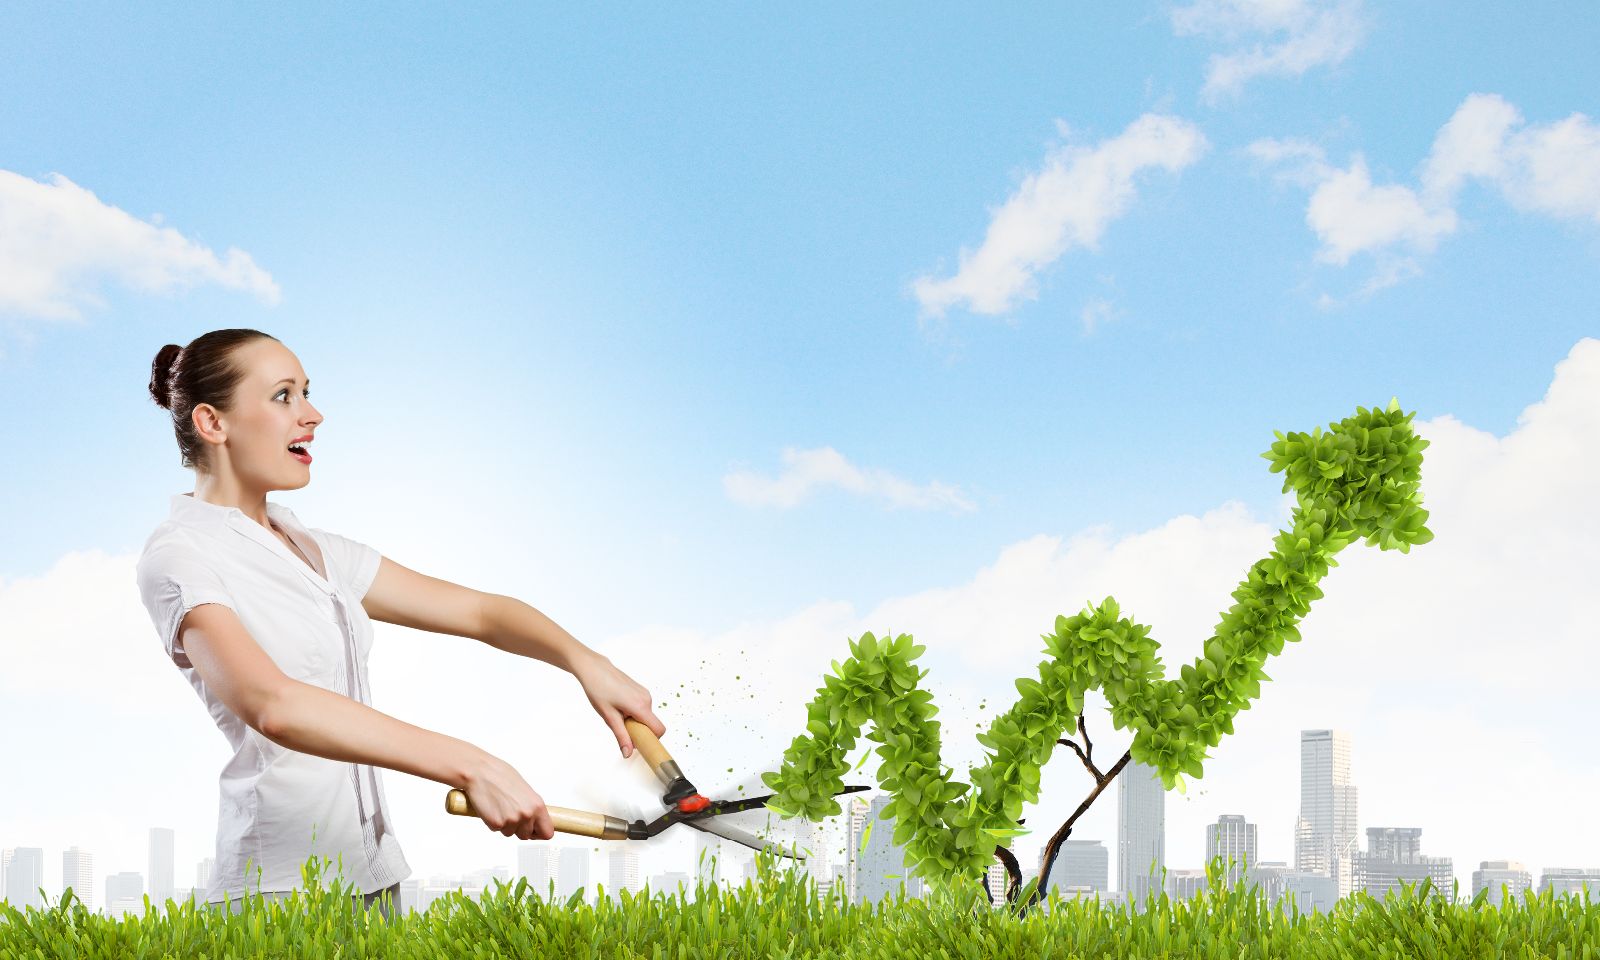 Mujer vestida de blancop en un jardin cortando un arbusto fondo de cielo azul